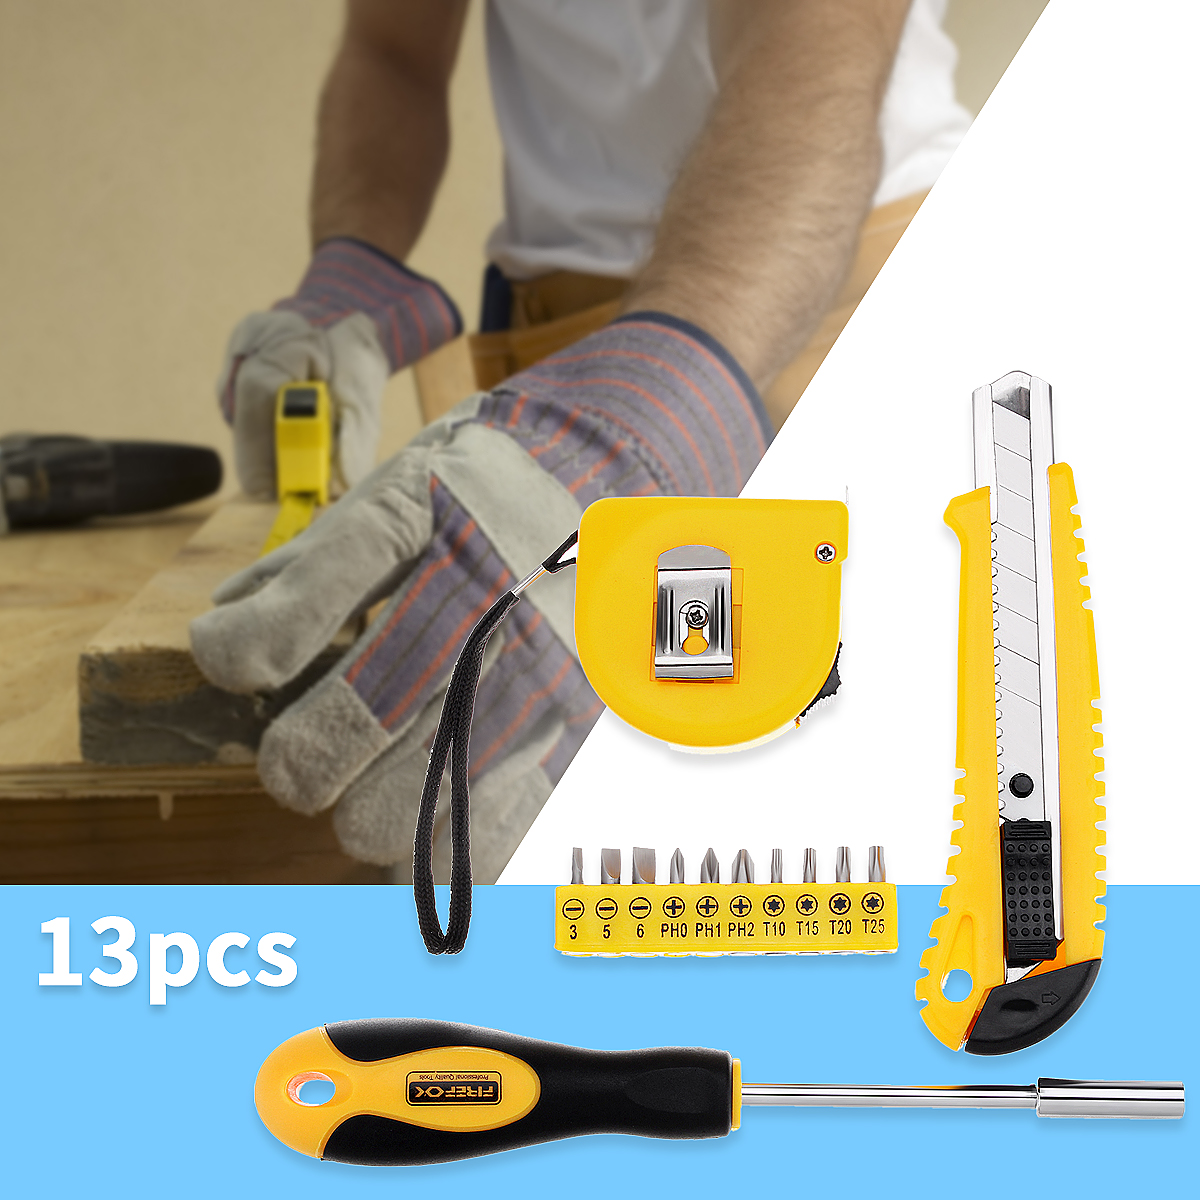 13Pcs-DIY-Household-Hand-Tool-Kit-Maintenance-Repair-Kits-Tape-Measure-Screwdriver-Cutter-Tool-1272087-2